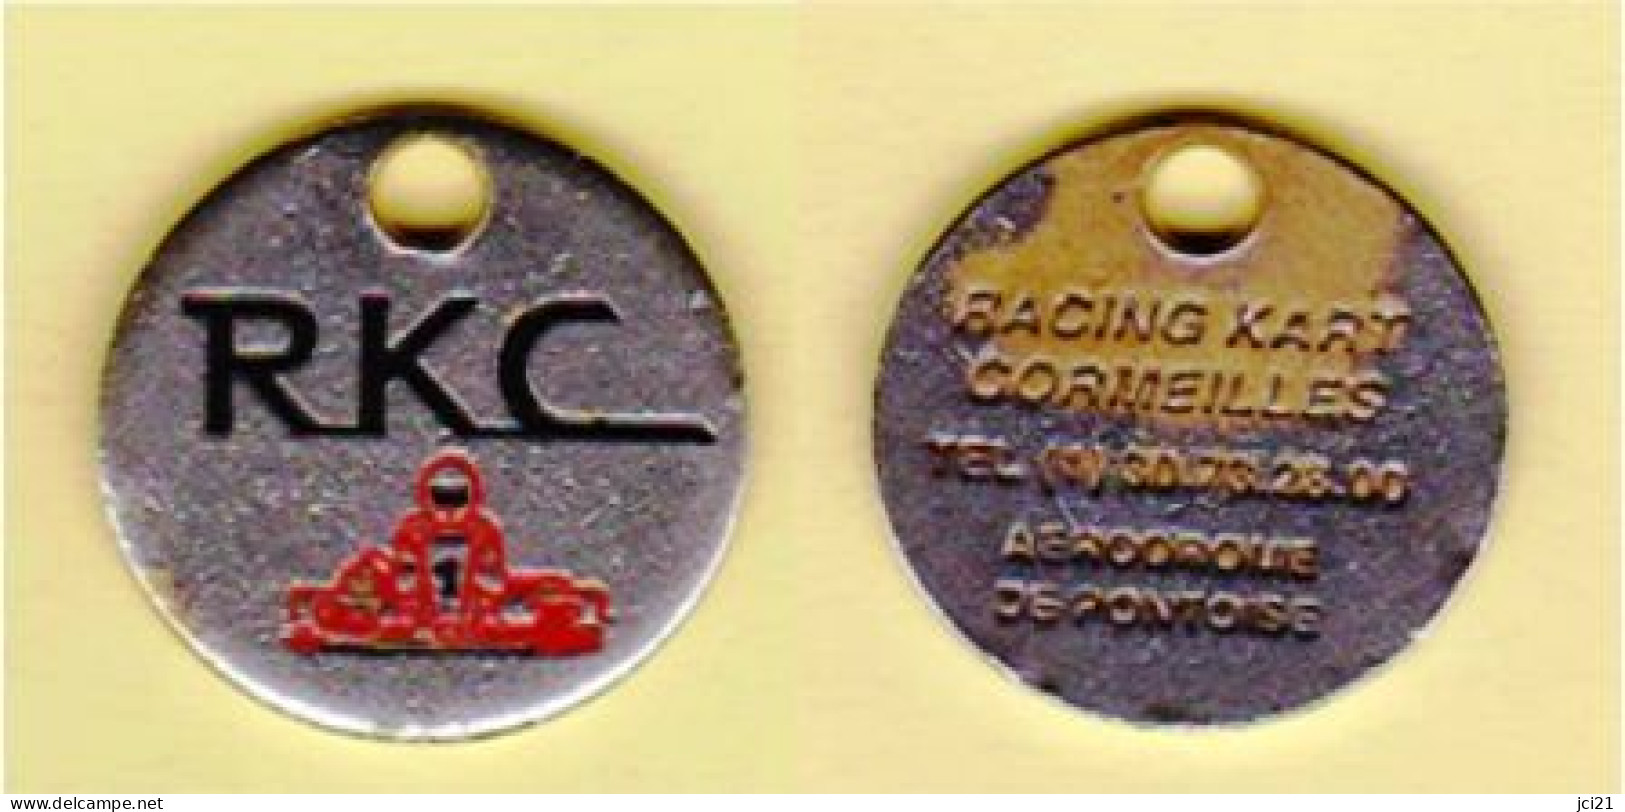 Jeton De Caddie " RKC - RACING KART CORMEILLES - Aérodrome De Pontoise" Karting [G]_Je045 - Jetons De Caddies